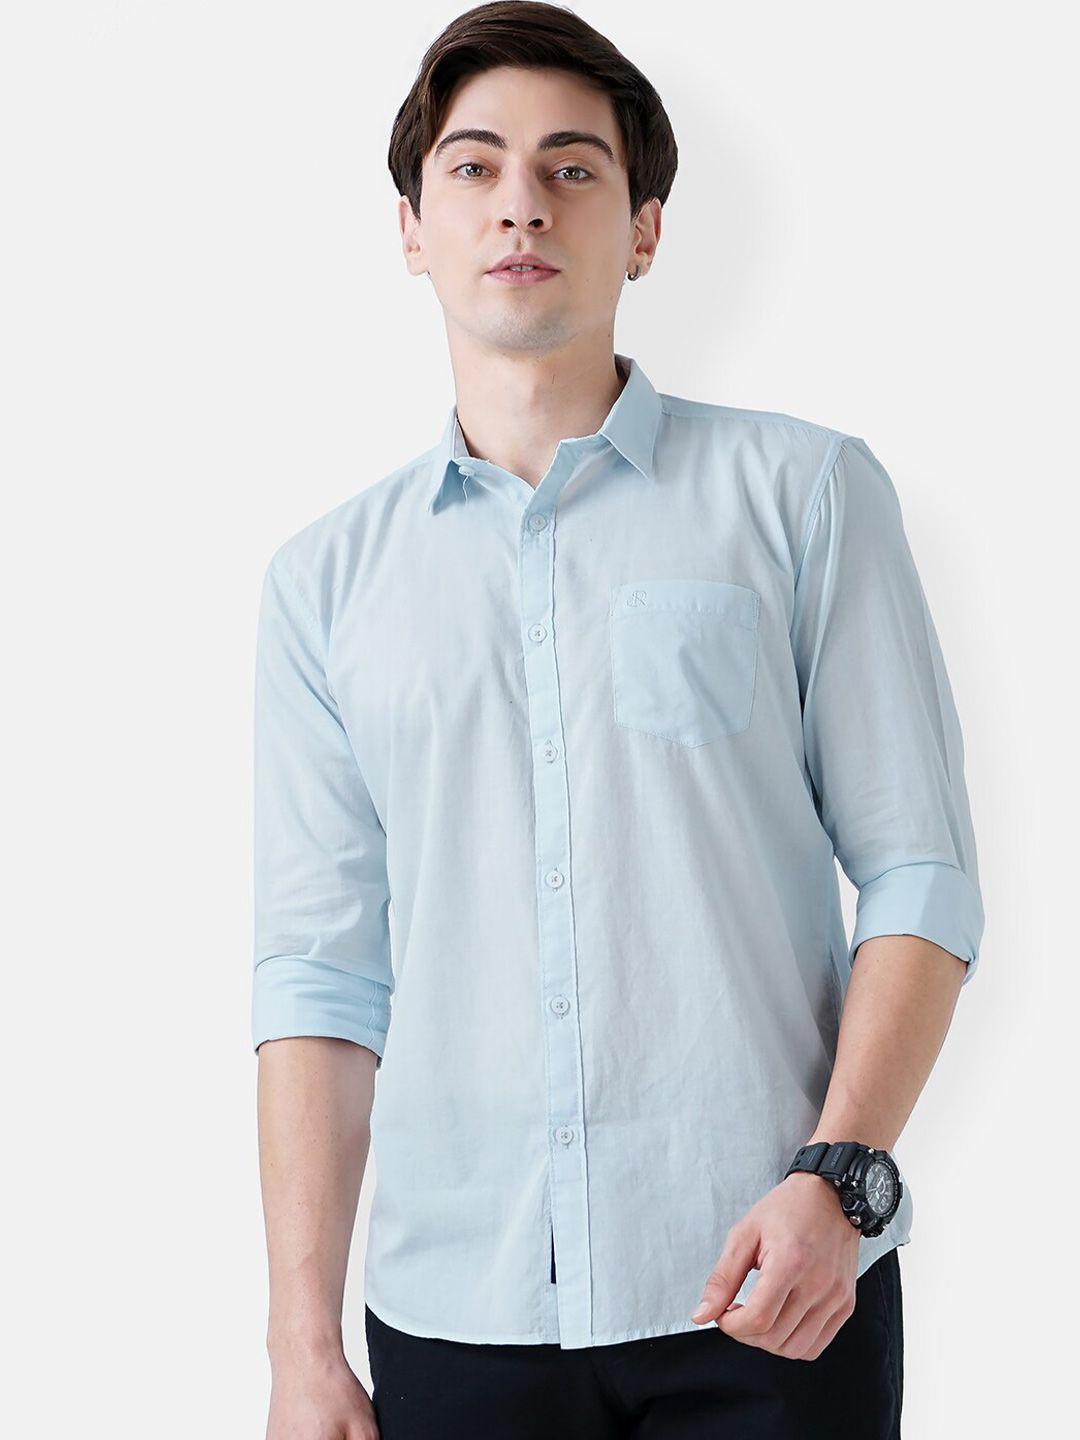 soratia-men-blue-slim-fit-solid-casual-shirt